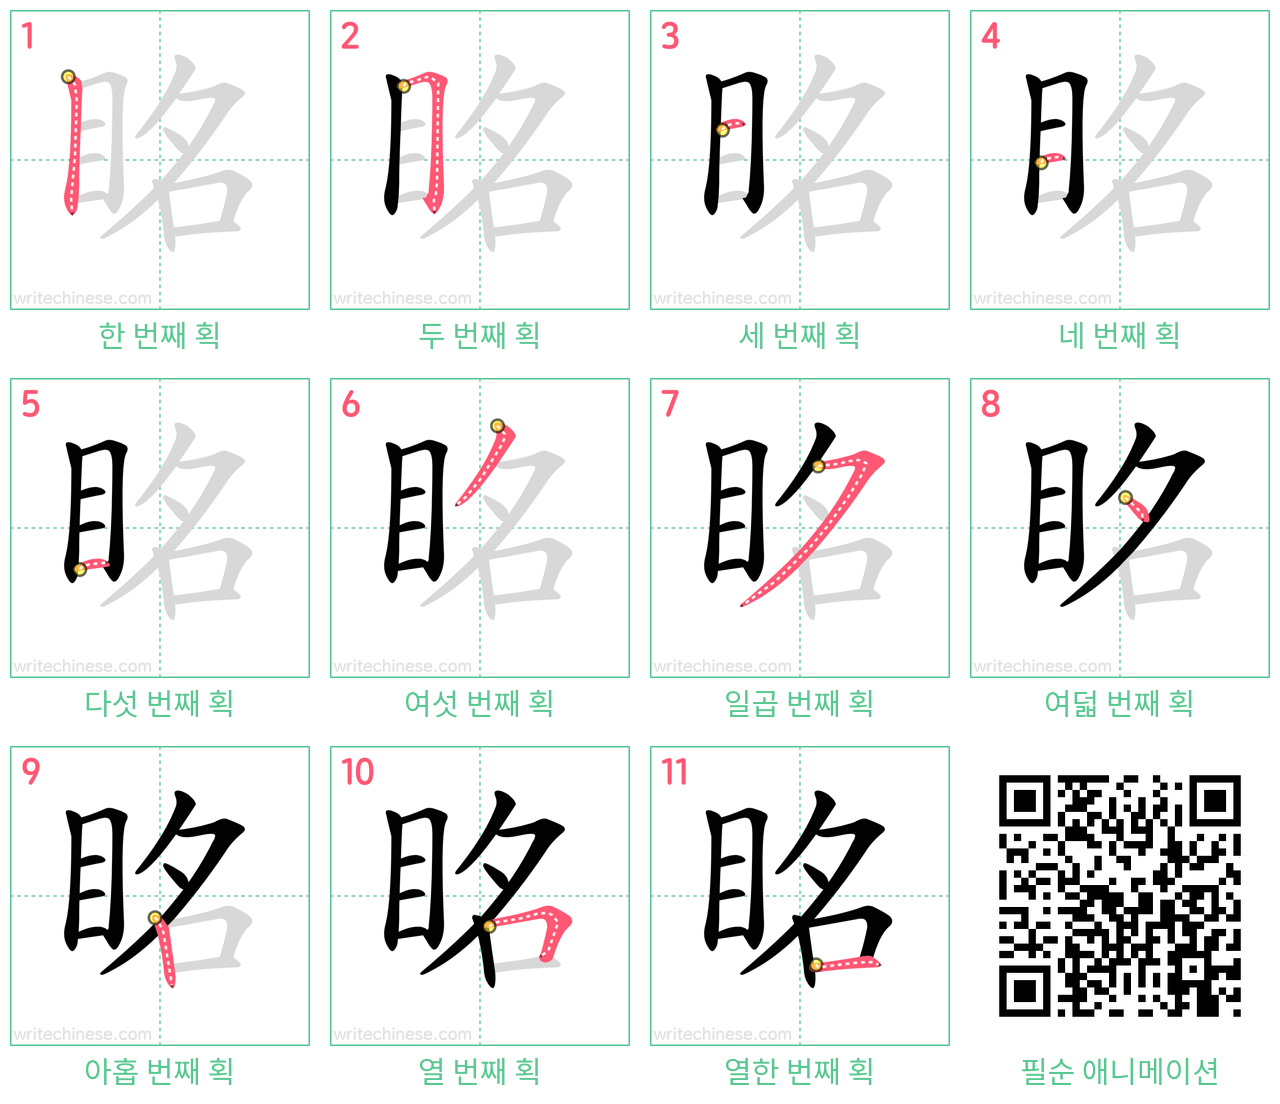 眳 step-by-step stroke order diagrams